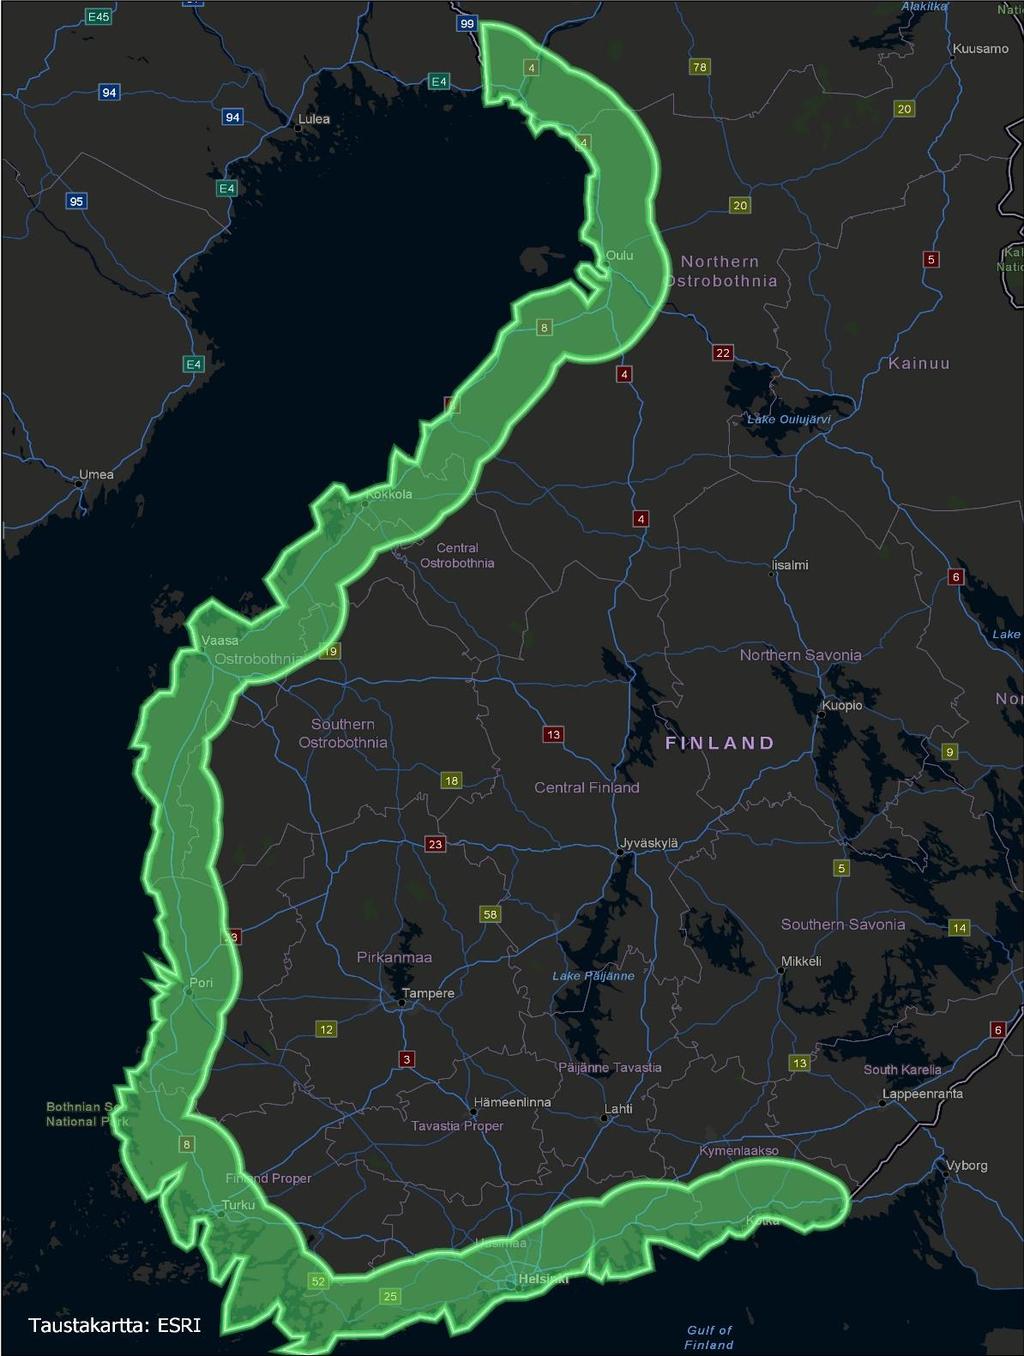 Tornio Oulu Vaasa Pori Turku Kokkola RANNIKKO-SUOMI 30 KM KÄYTÄVÄ KOTKASTA TORNIOON 12,8 % koko maan maapinta-alasta 42,8 % koko maan asukkaista 53,1 % koko maan työpaikoista Noin 60 %